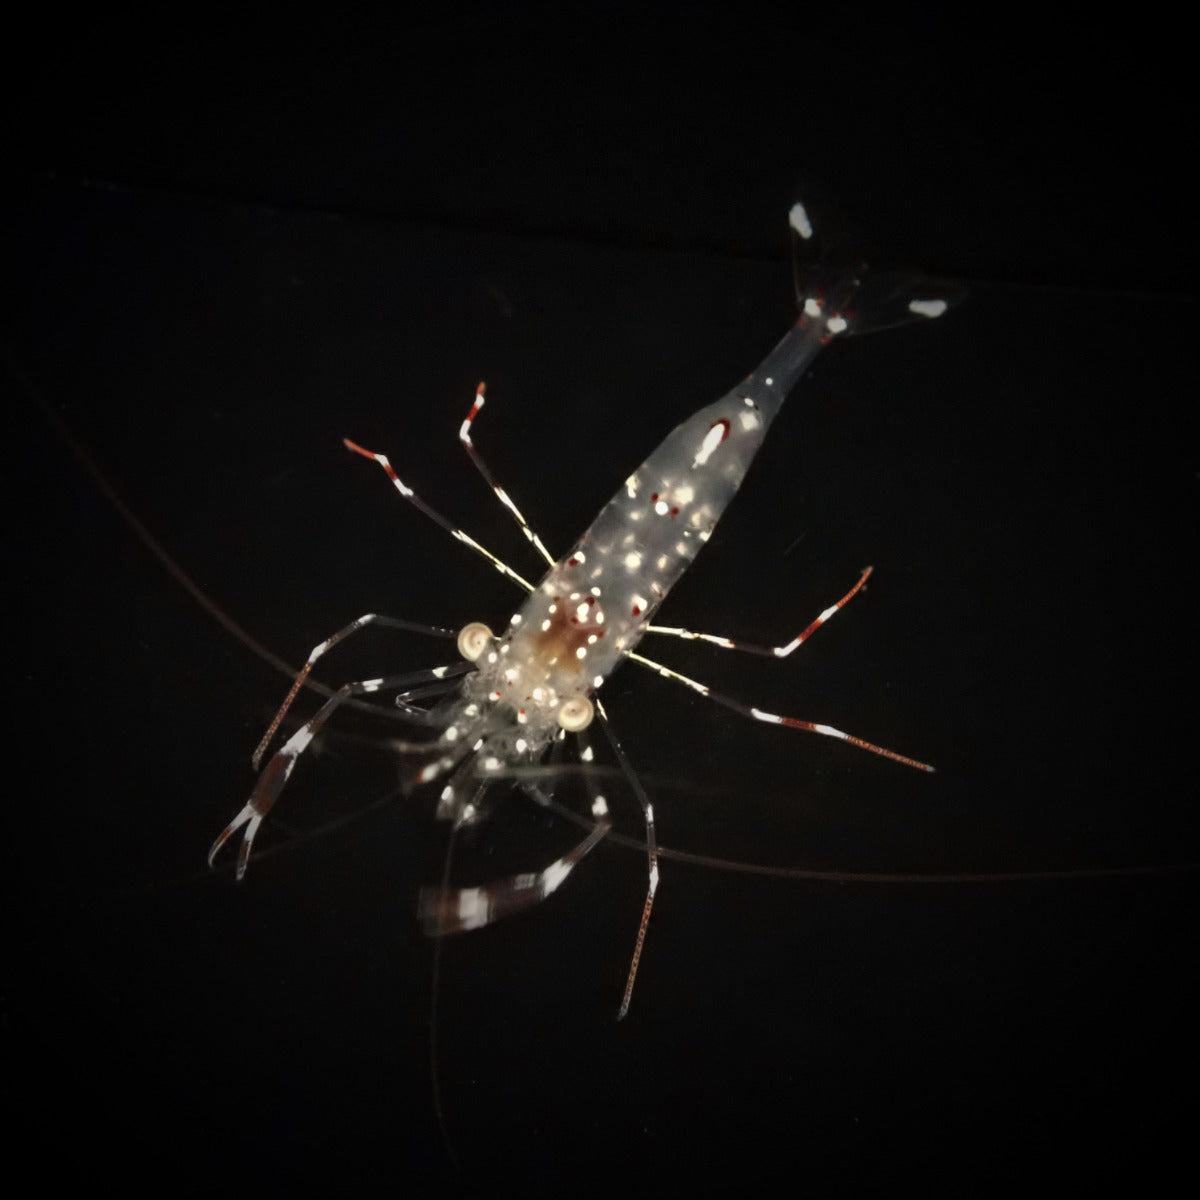 Urocaridella antonbruunii - Bruun's shrimp